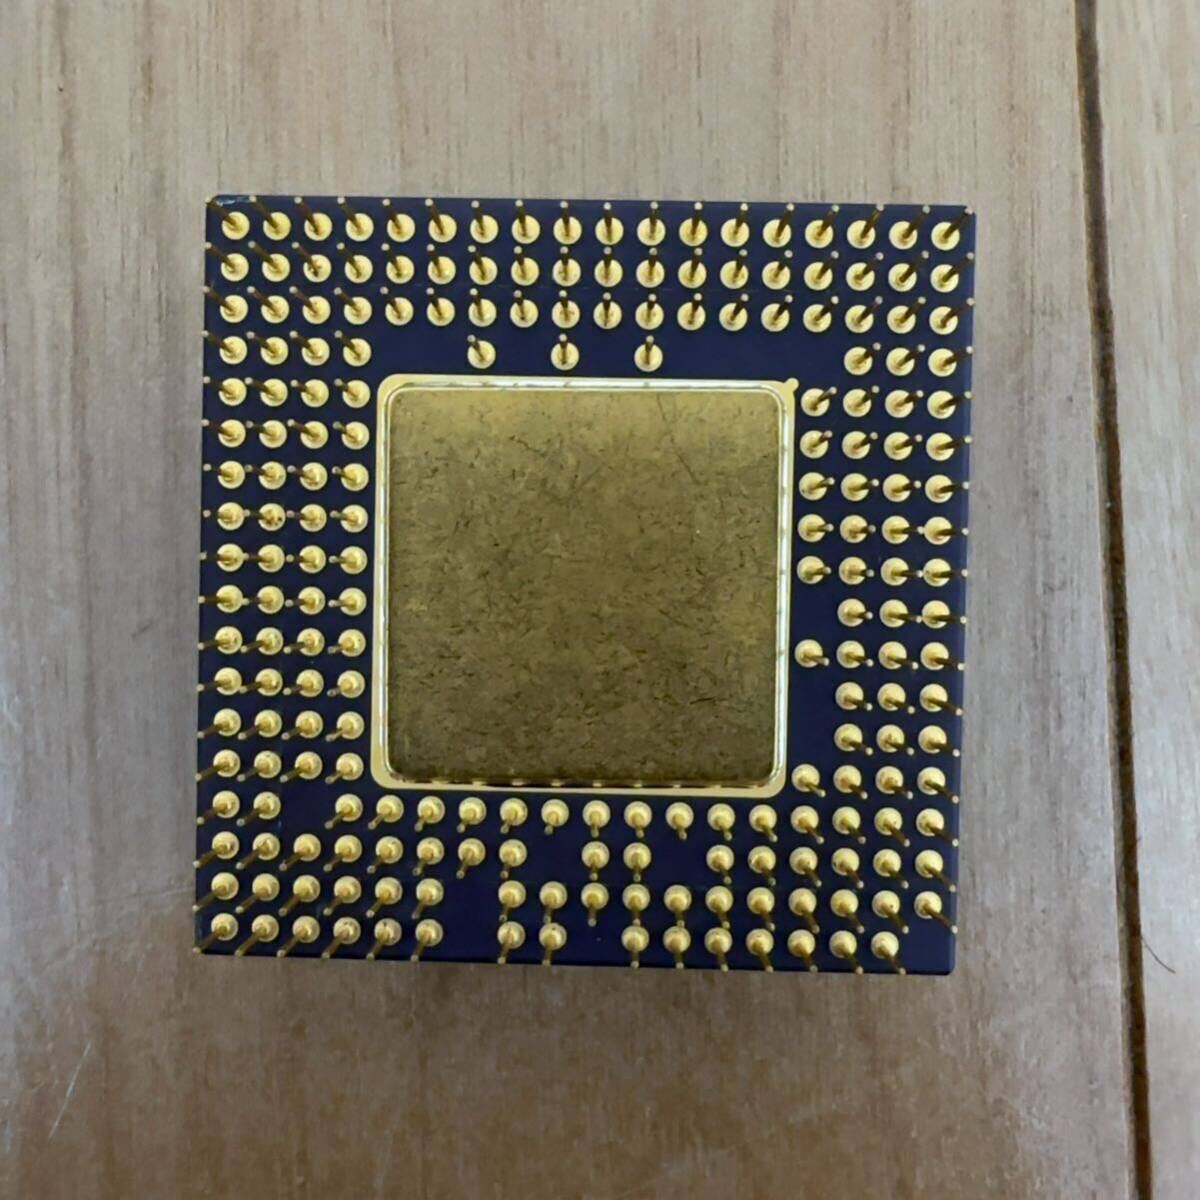 モトローラMPU MC68LC060RC50 動作不明(68060系)ヒートシンク付き コレクション用の画像2